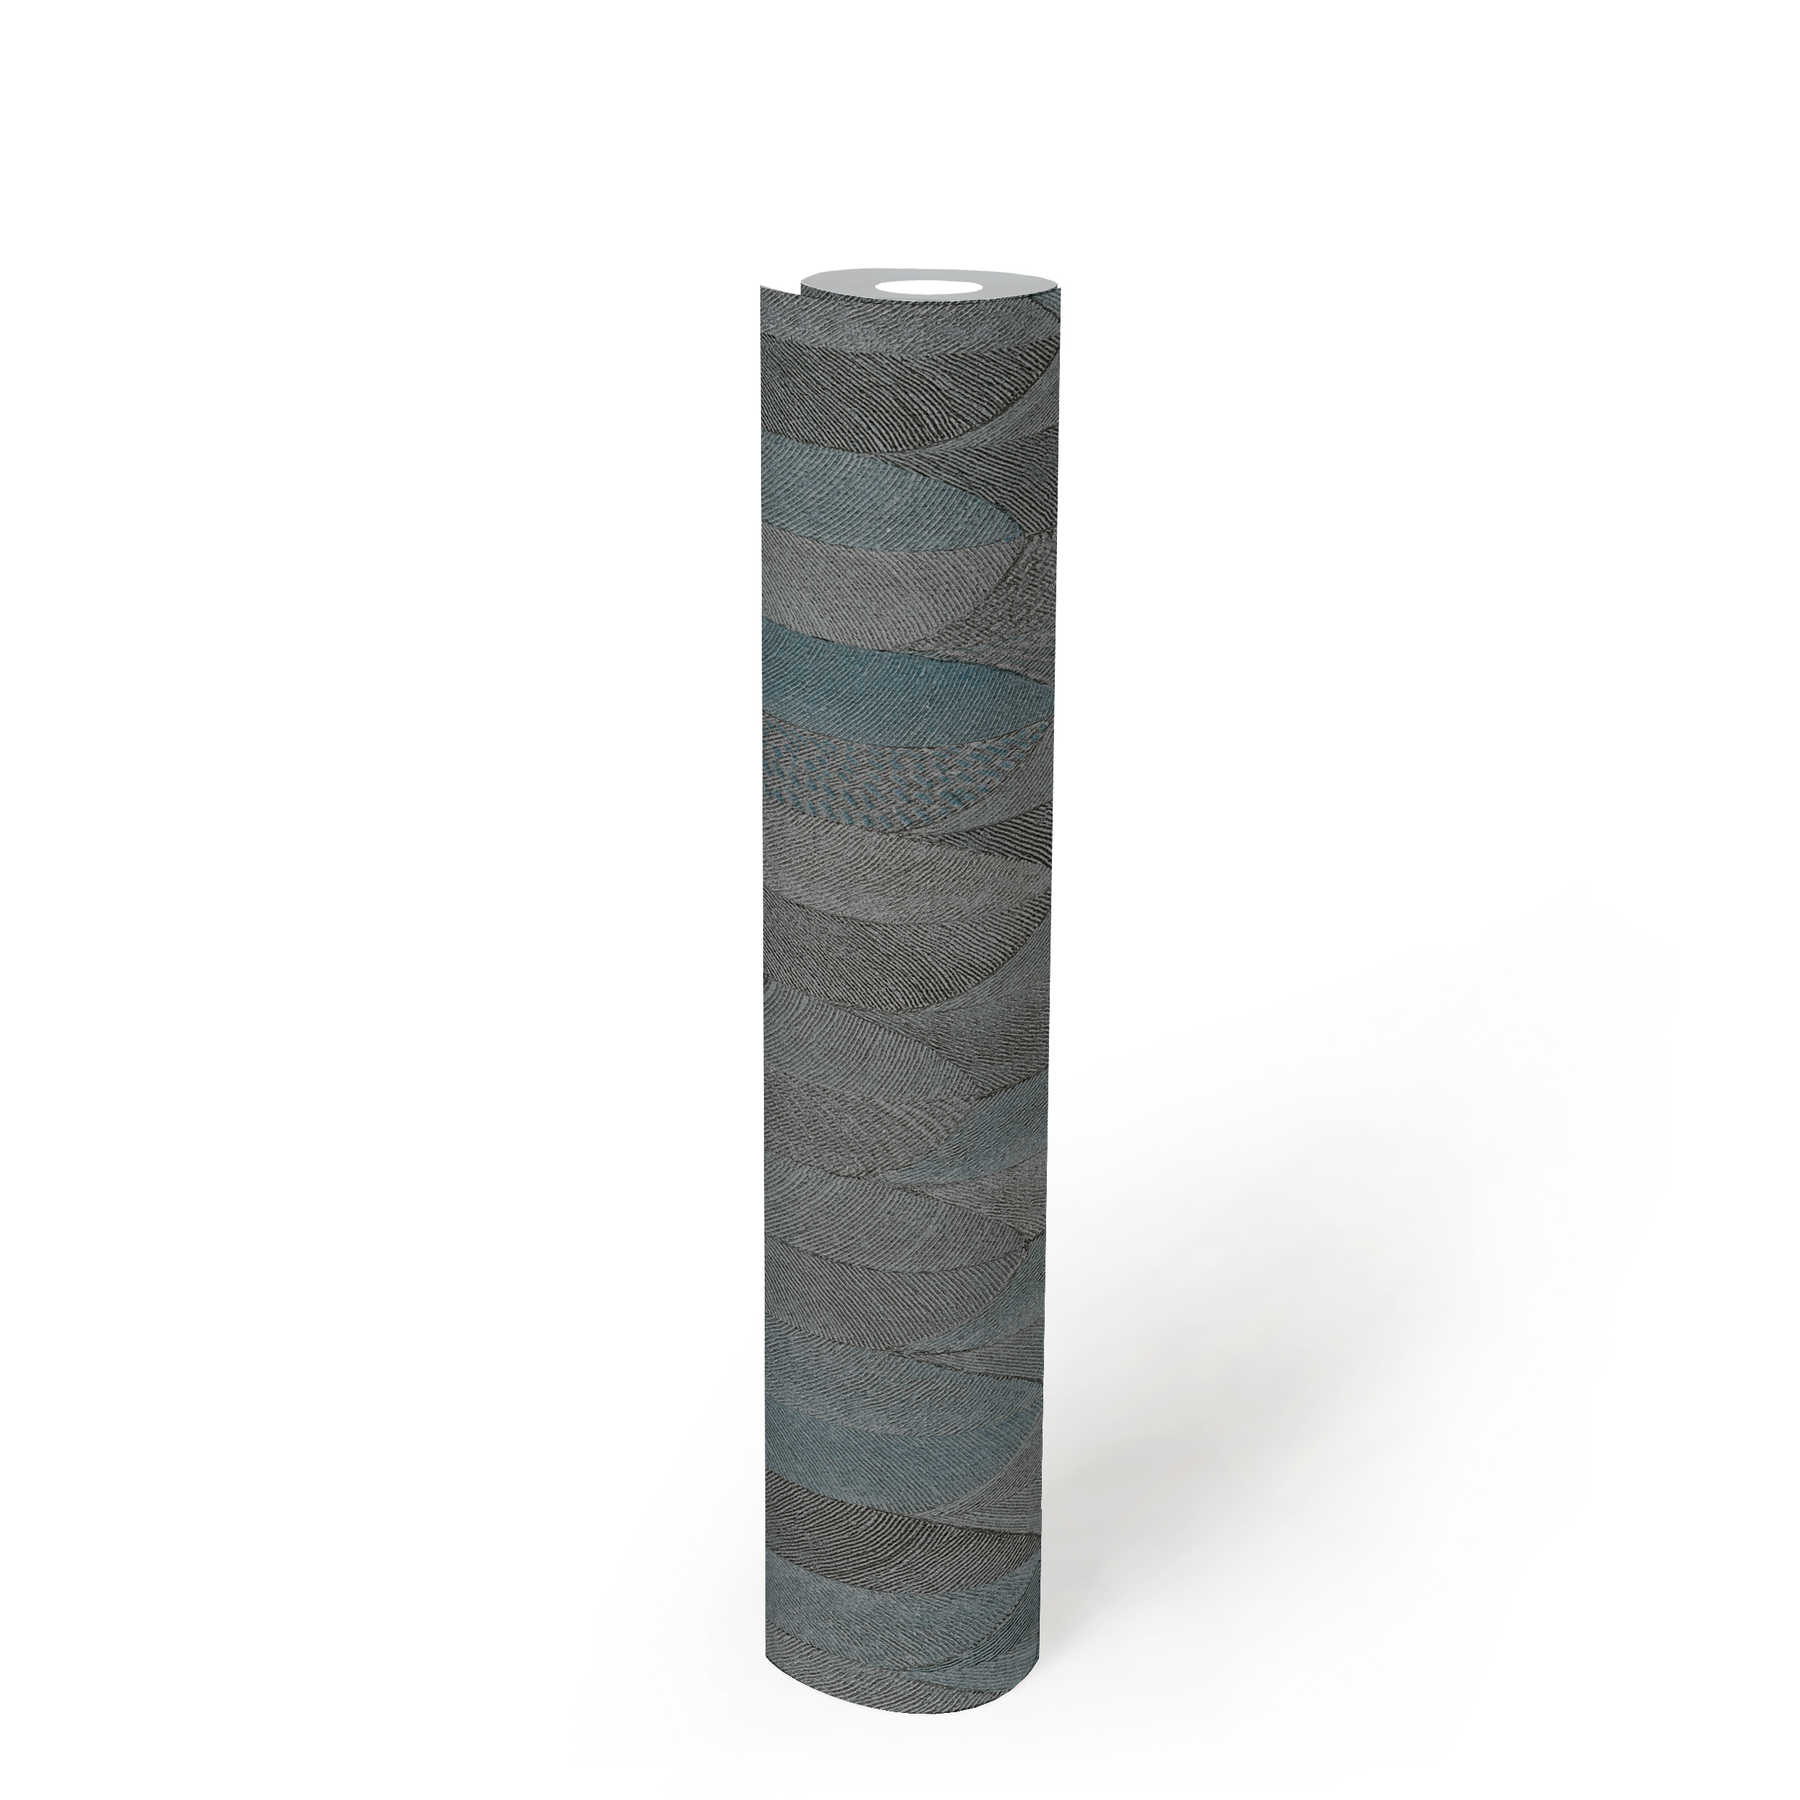             Symetrisch designbehang met metaaleffect - grijs, blauw, zwart
        